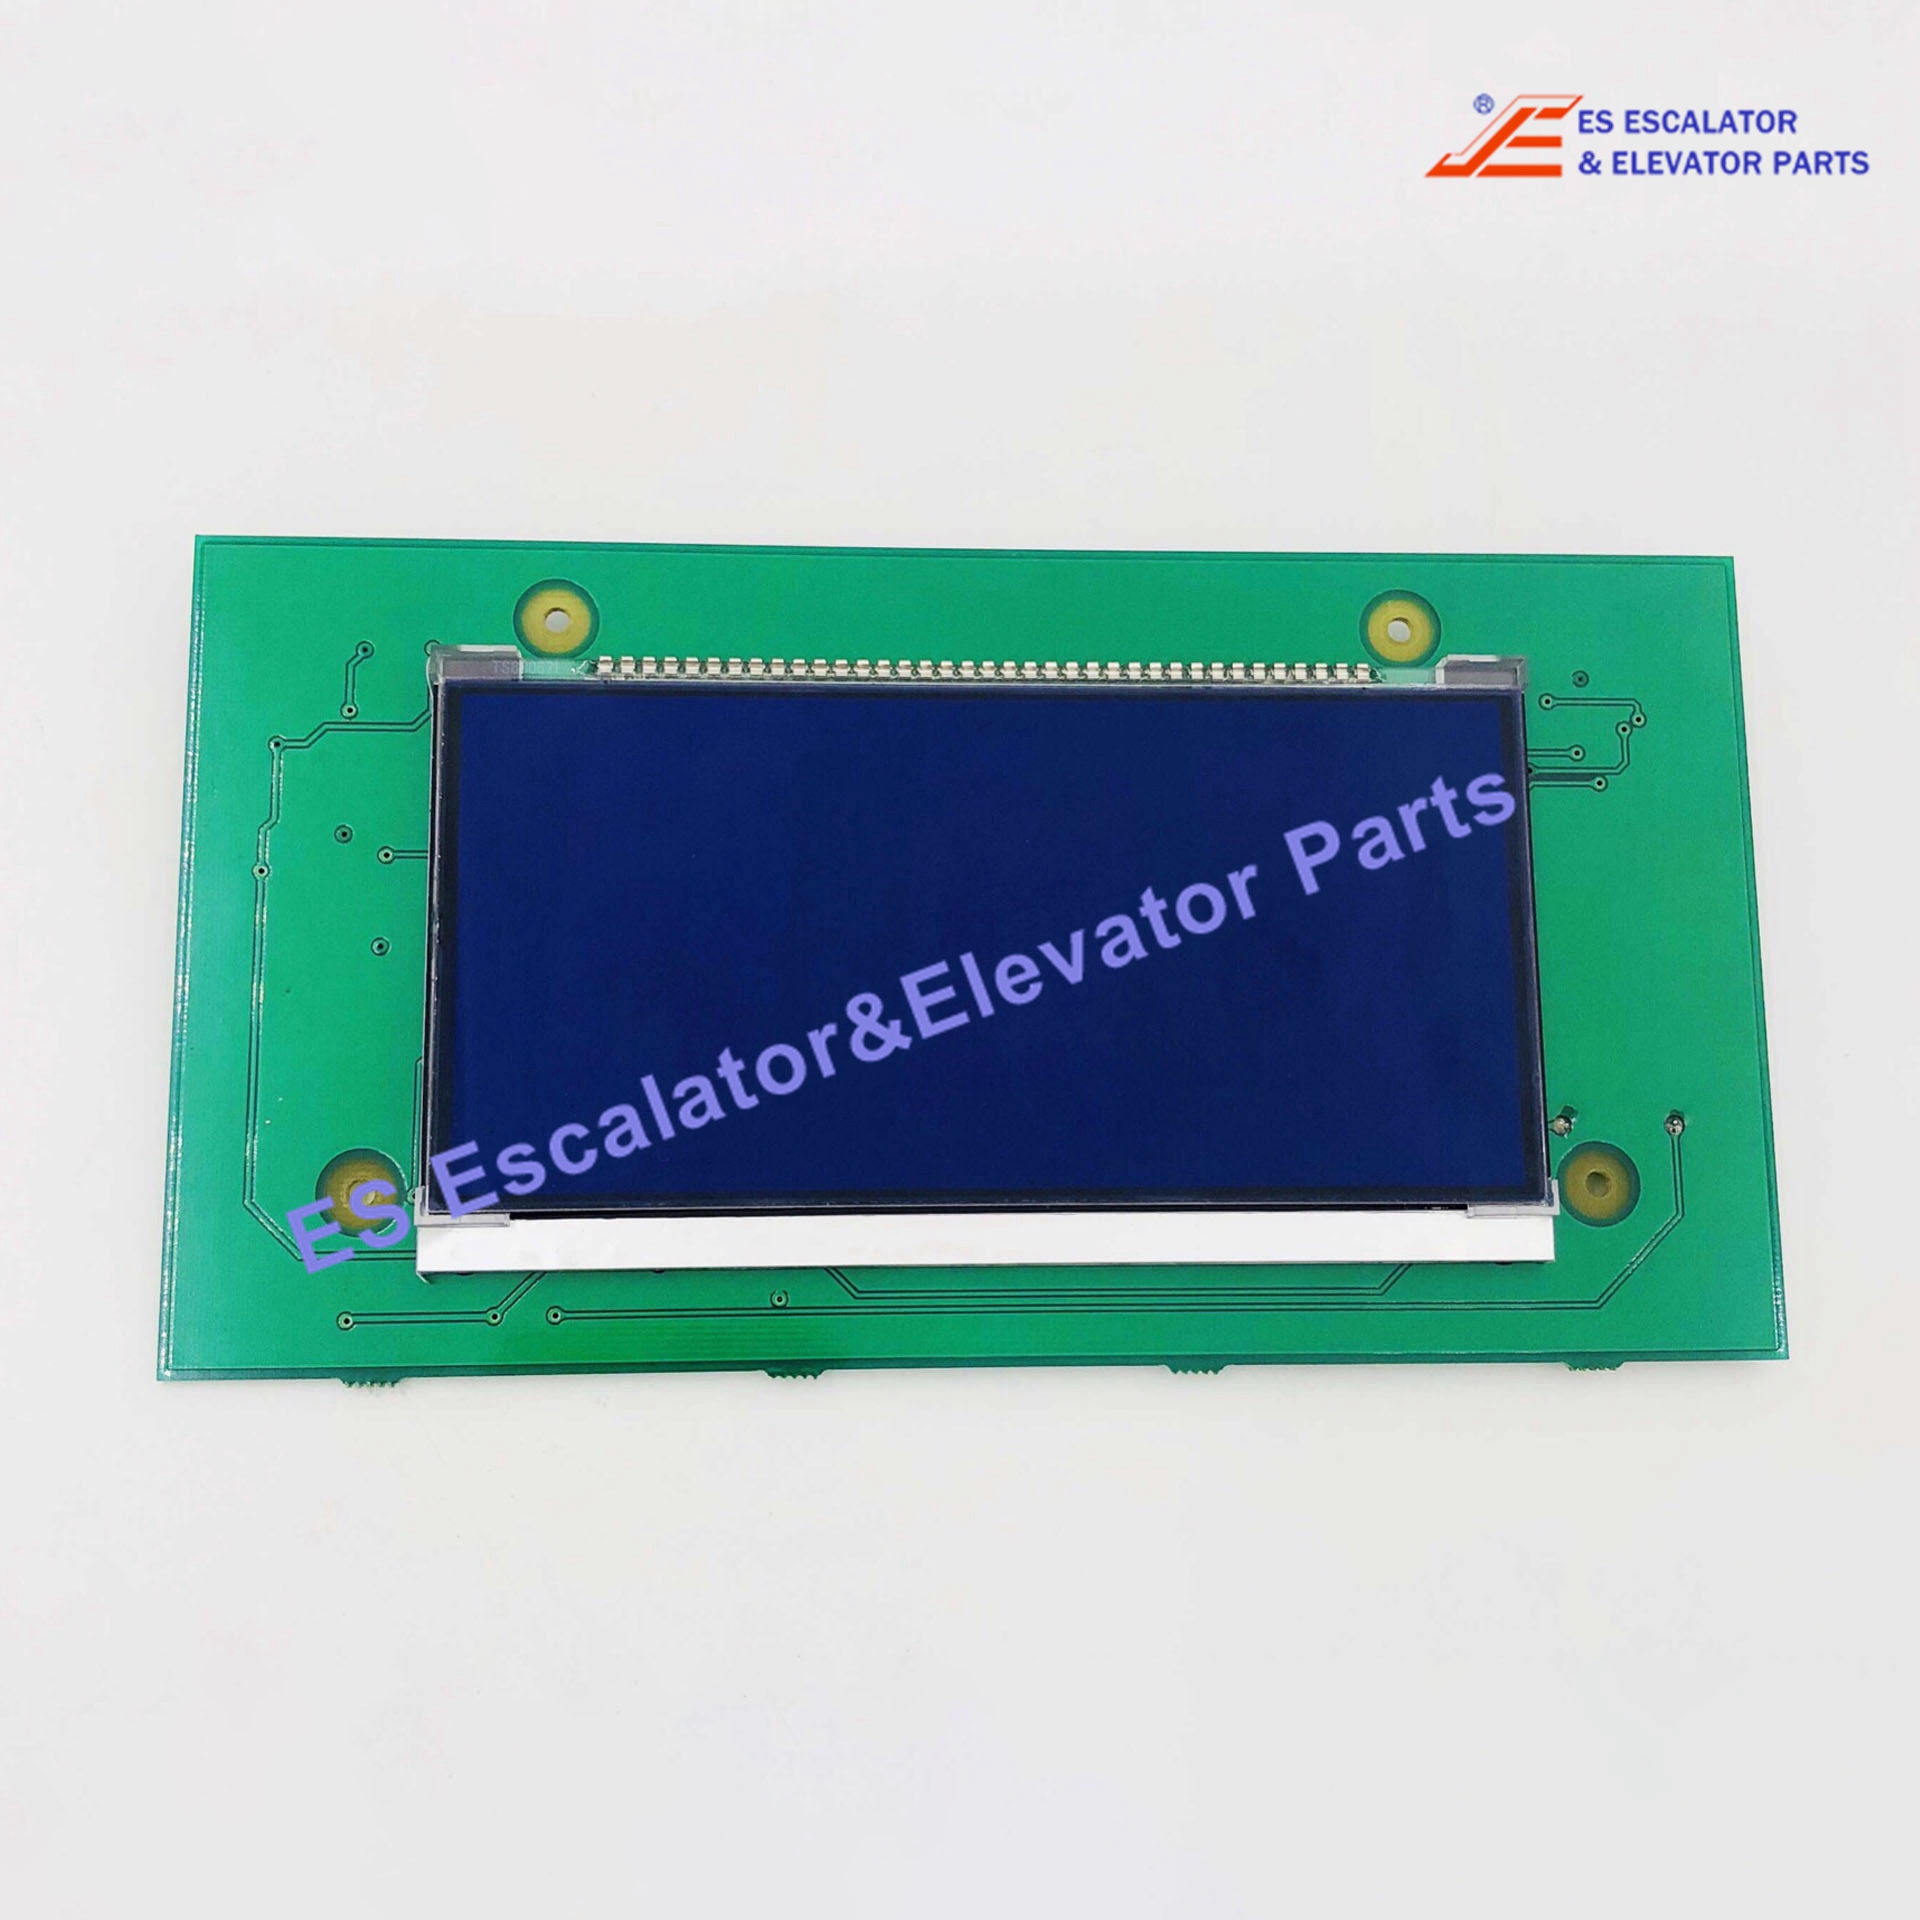 FDA23600V1 Elevator Display Board LCD HPI PCB Use For Otis